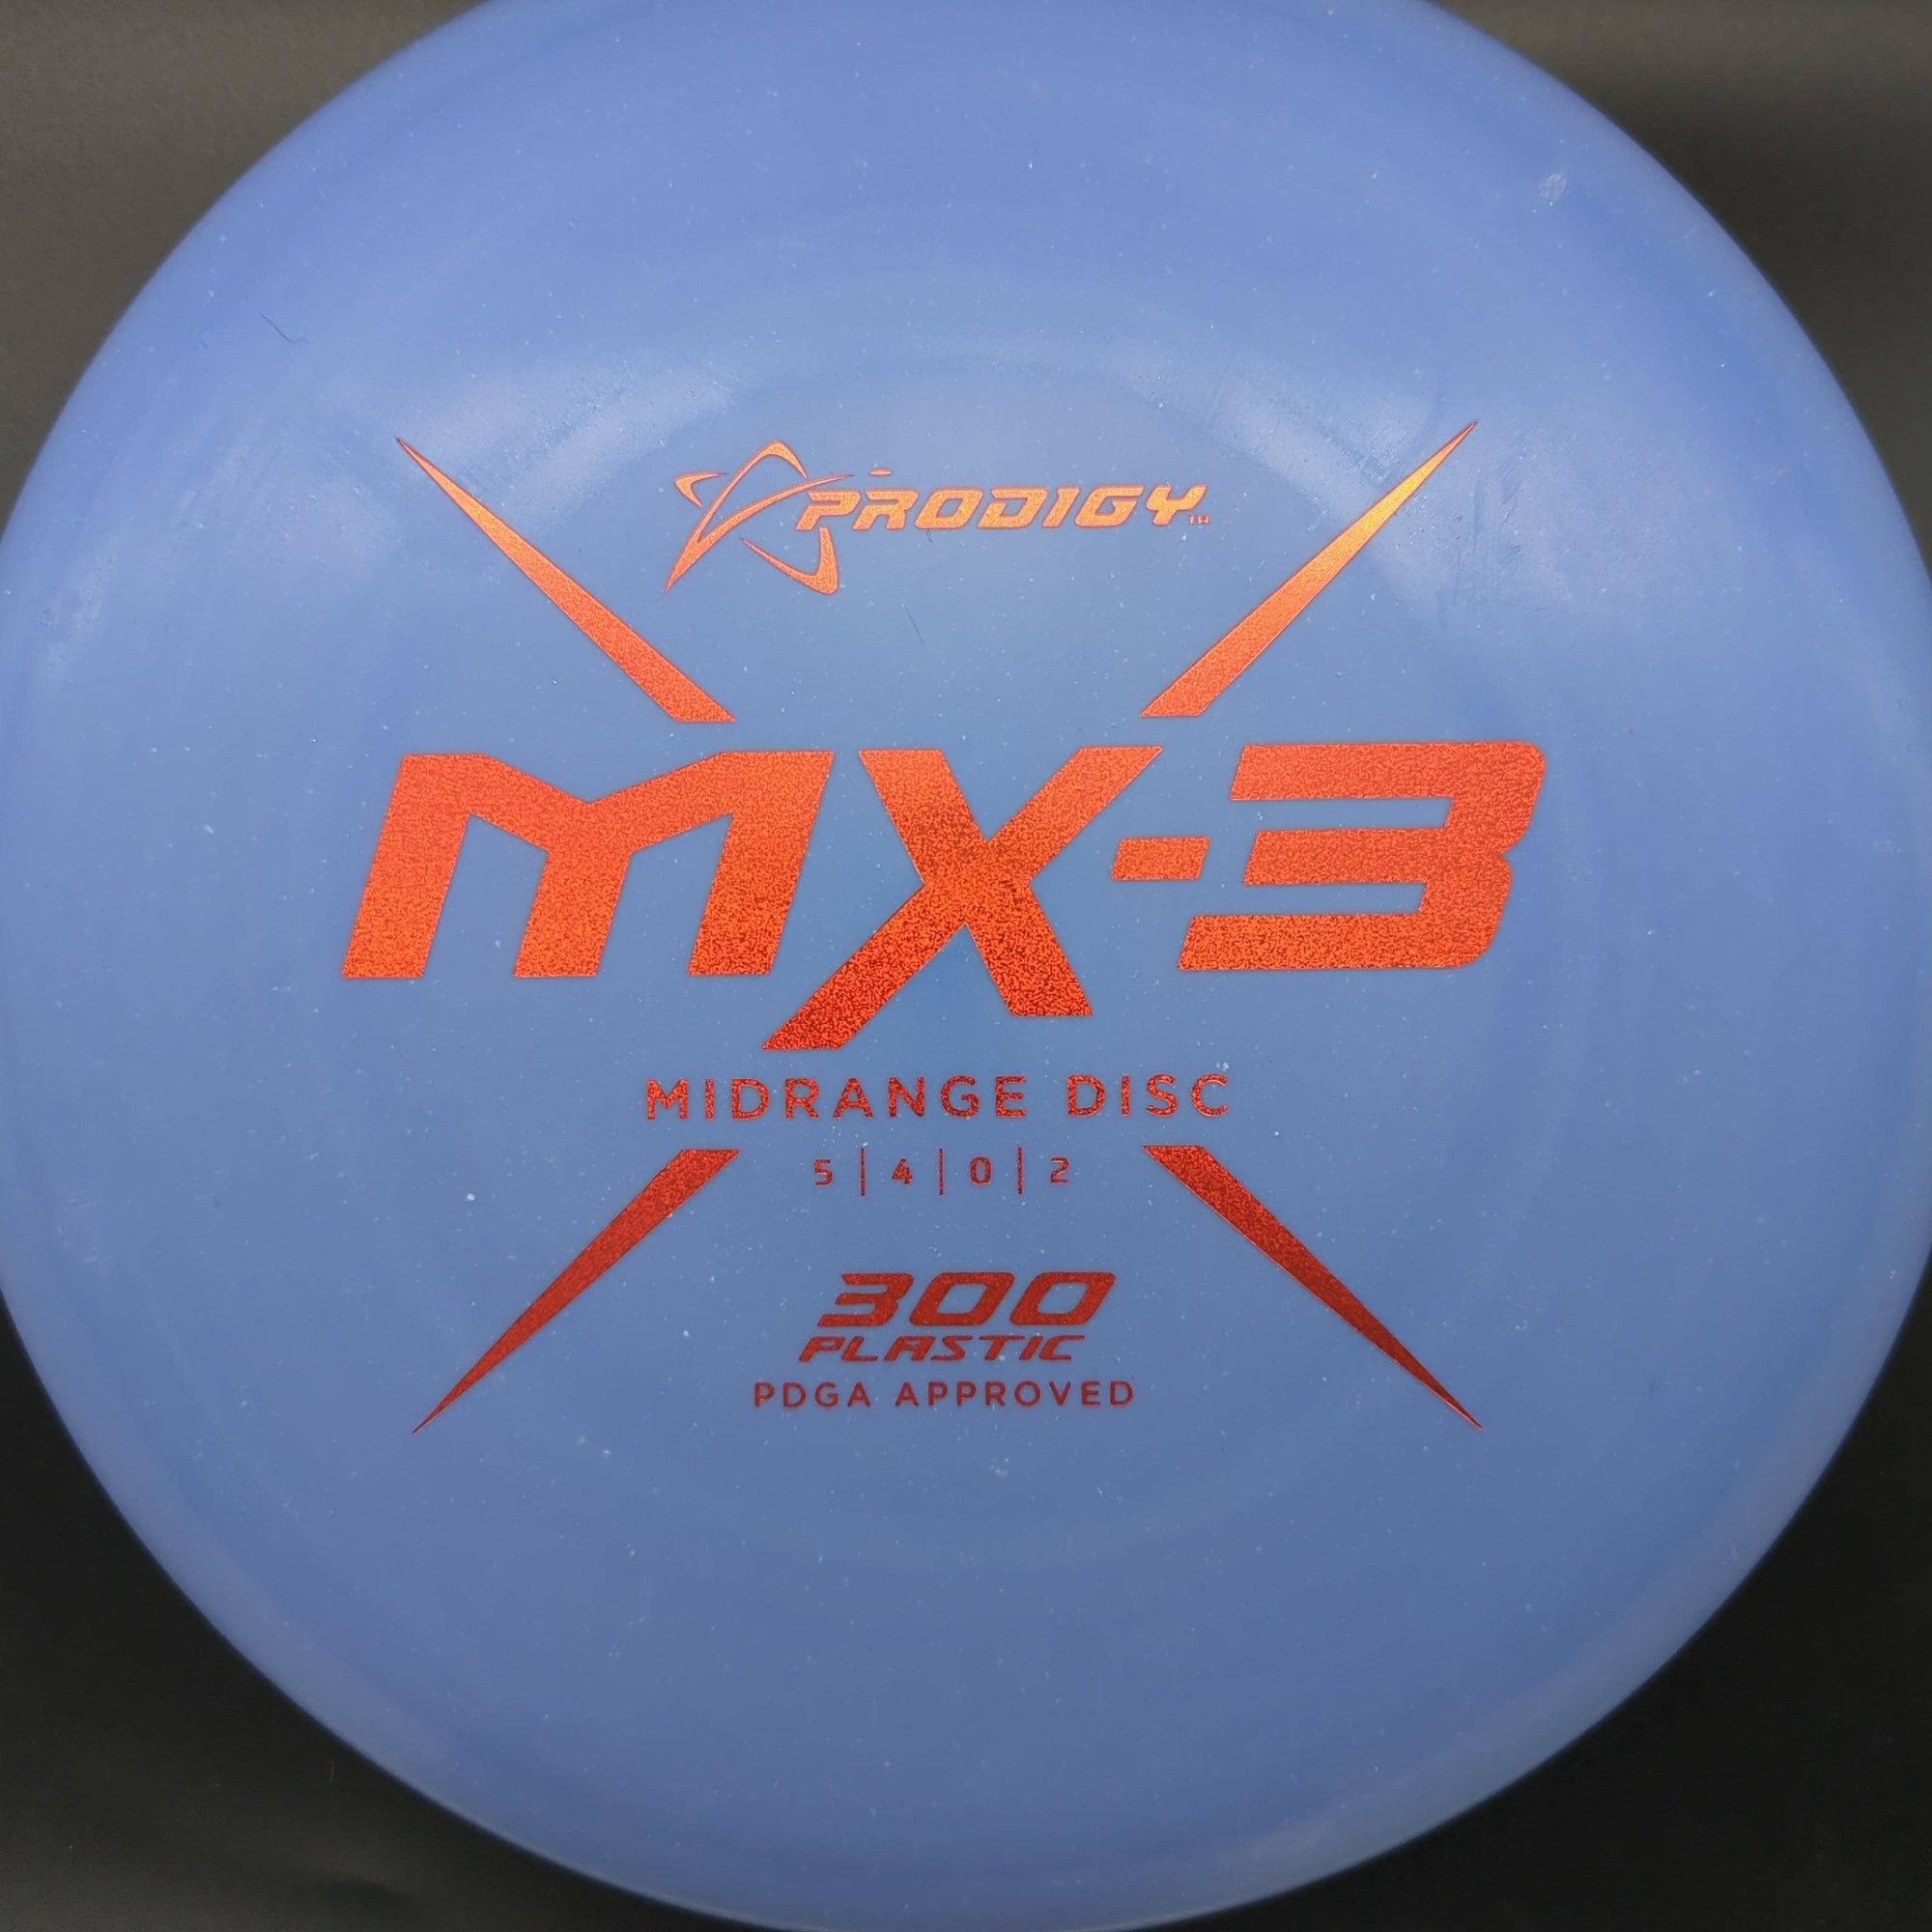 Prodigy Mid Range MX3, 300 Plastic